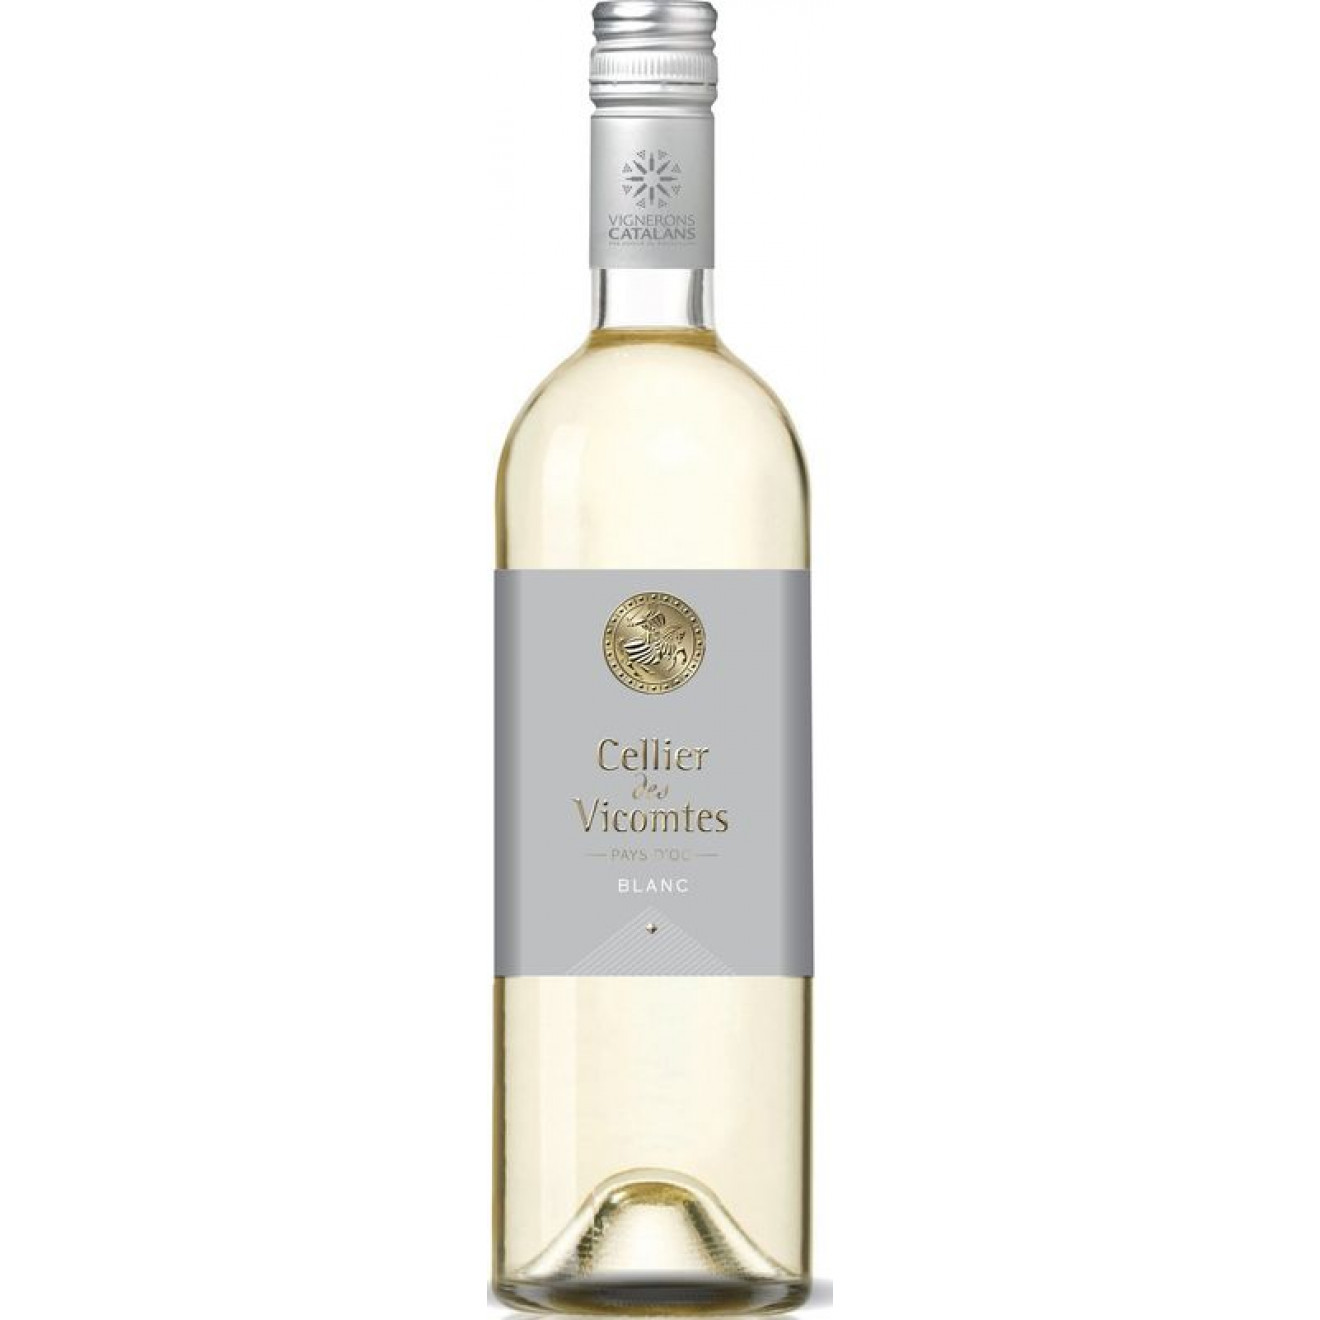 Cellier Vicomtes Blanc de Blancs Vin de Pays Catalan 2019 1,00l